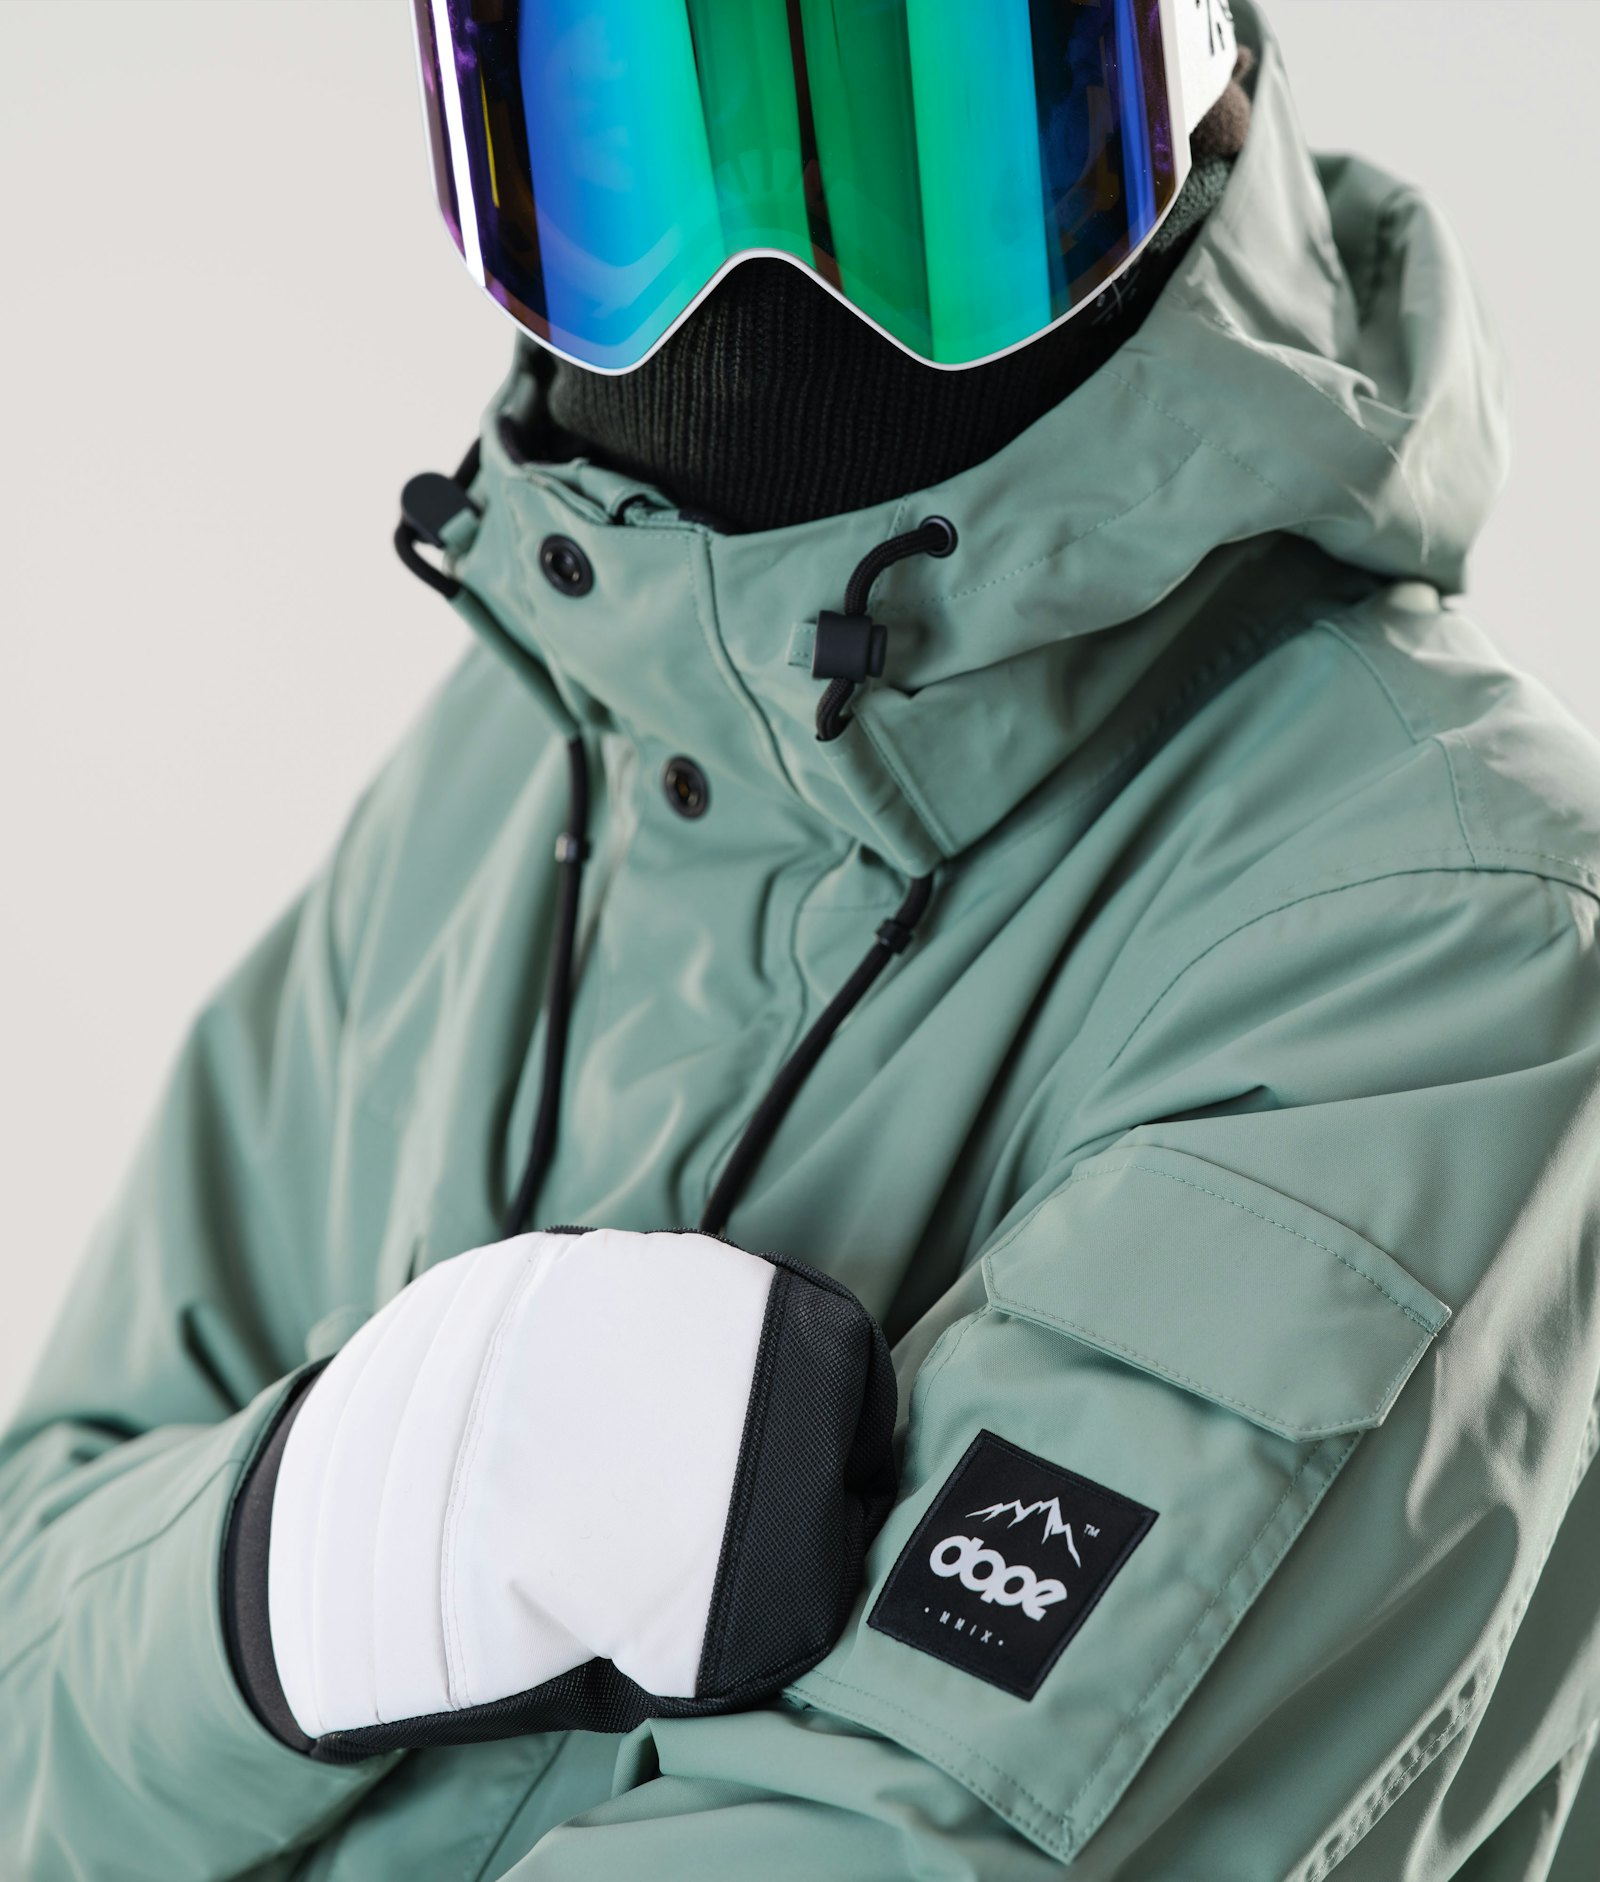 Adept 2020 Snowboard jas Heren Faded Green